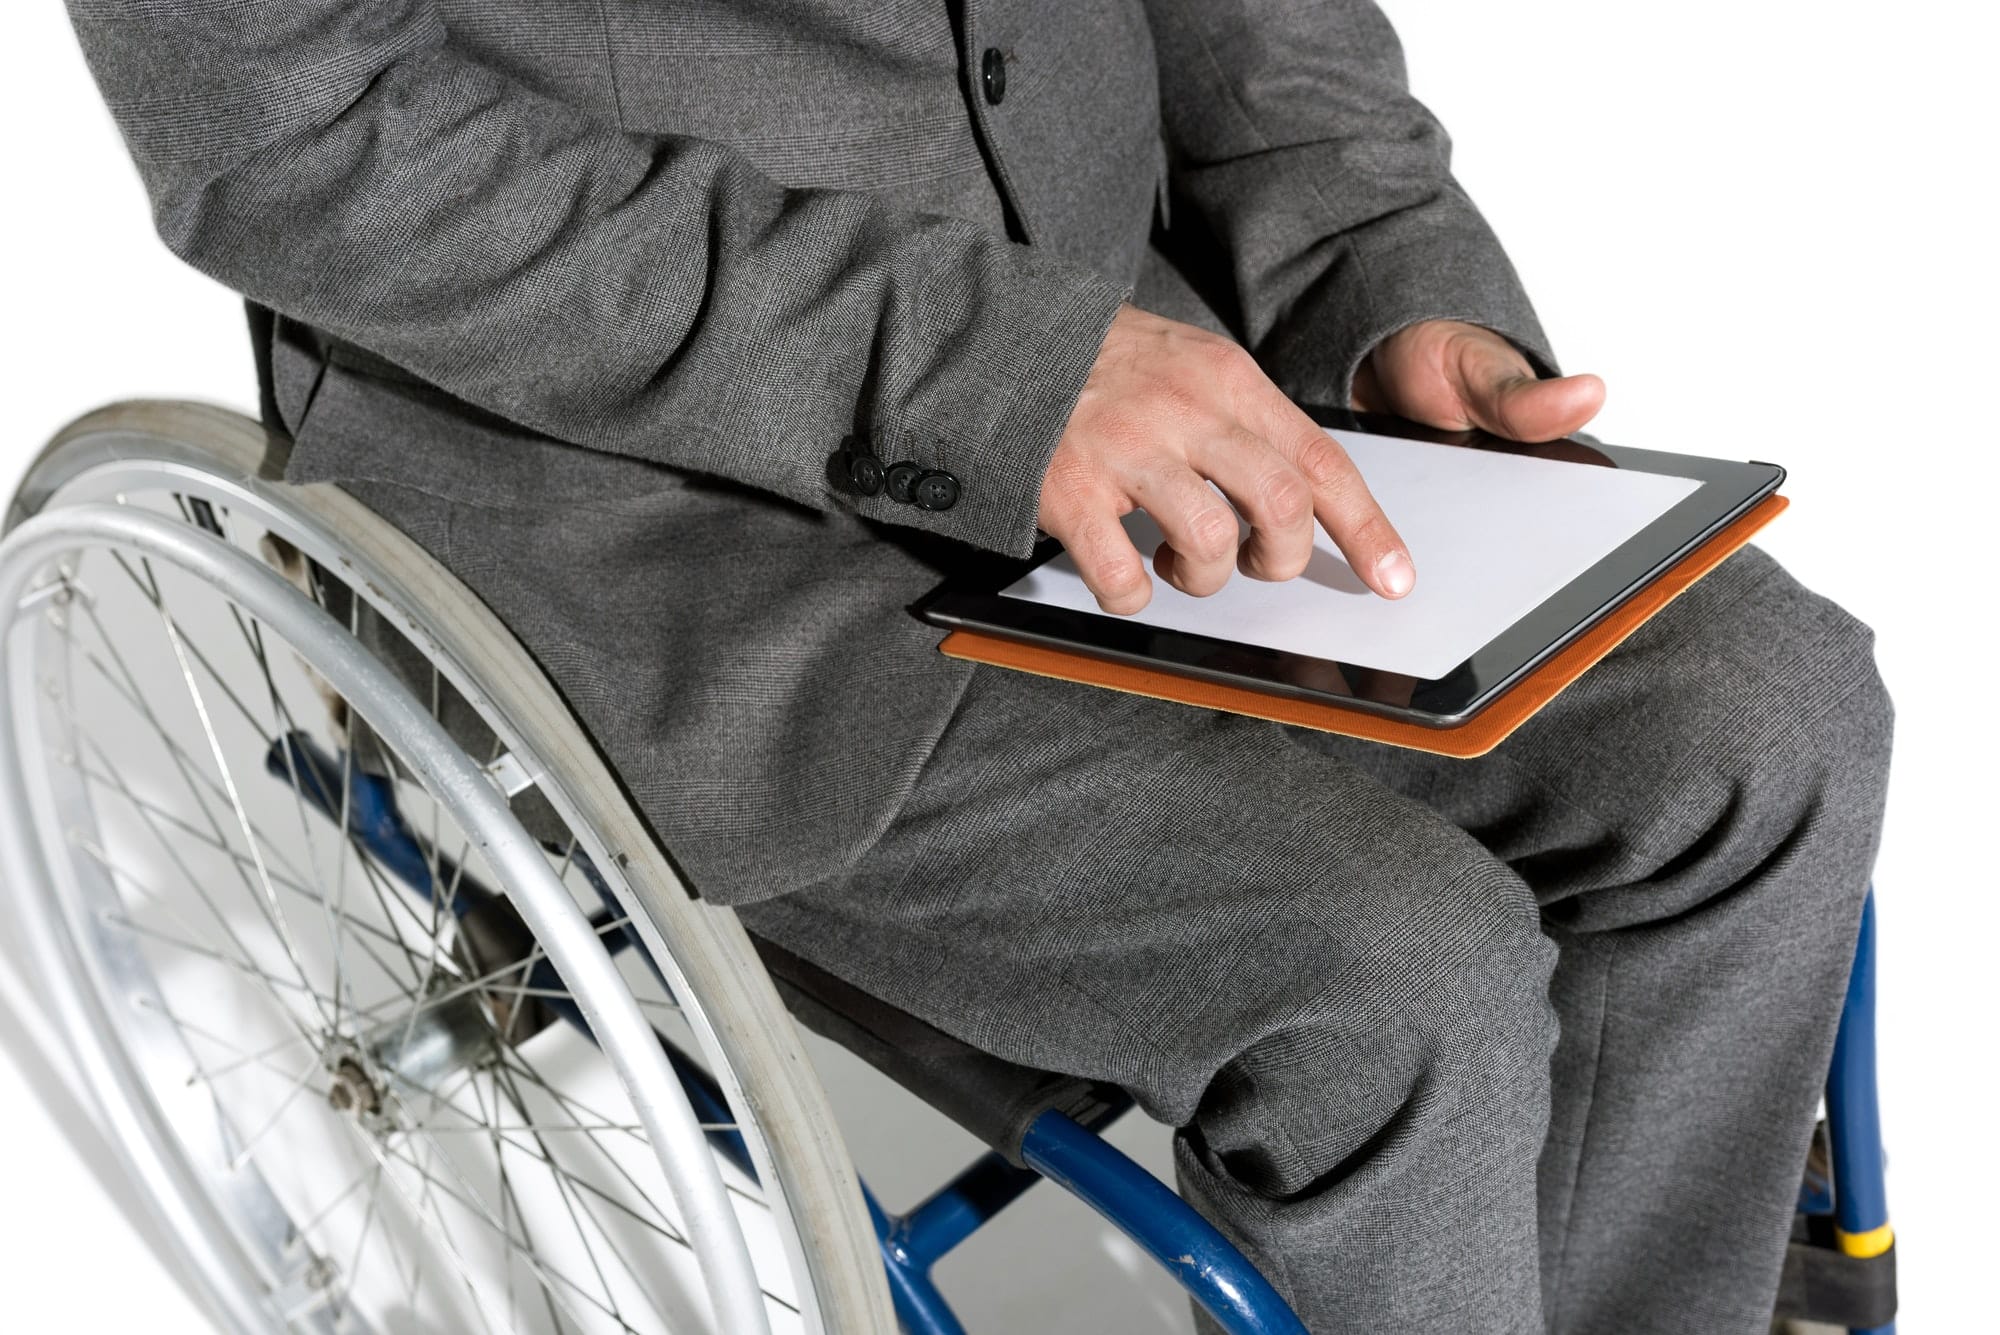 Amélioration de l’autonomie grâce aux technologies d’assistance et aux infos handicap